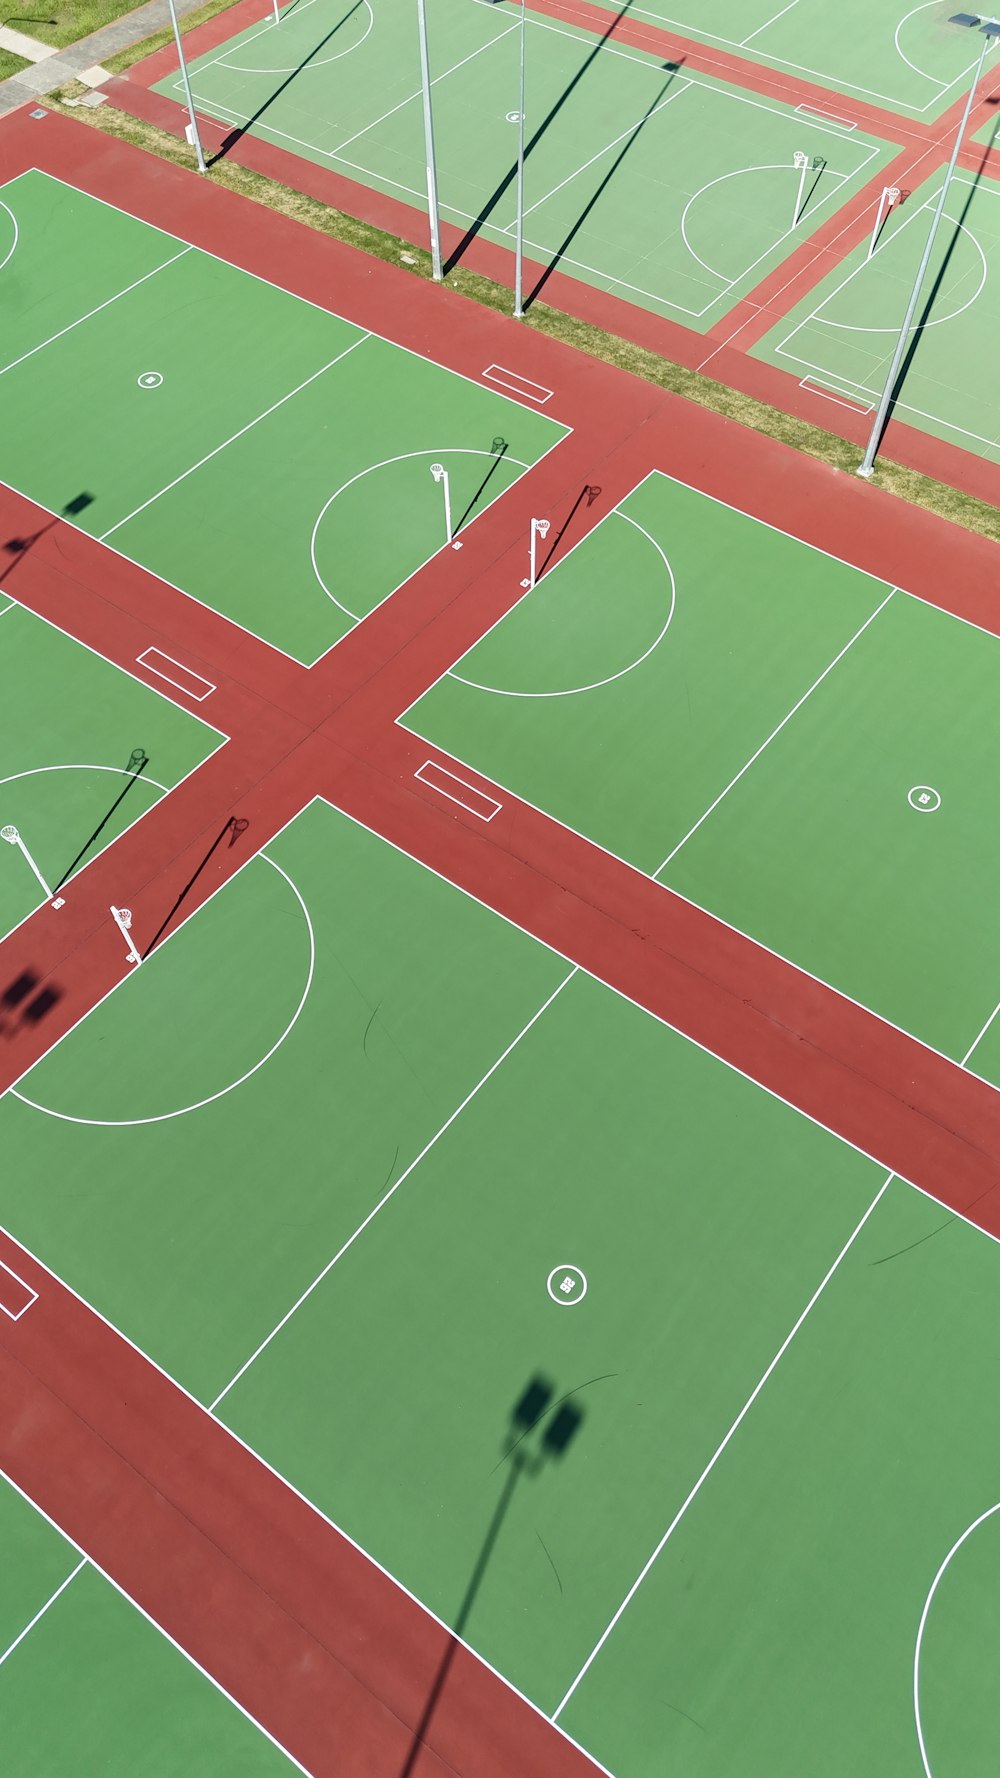 Draufsicht auf einen Basketballplatz mit rotem und grünem Feld